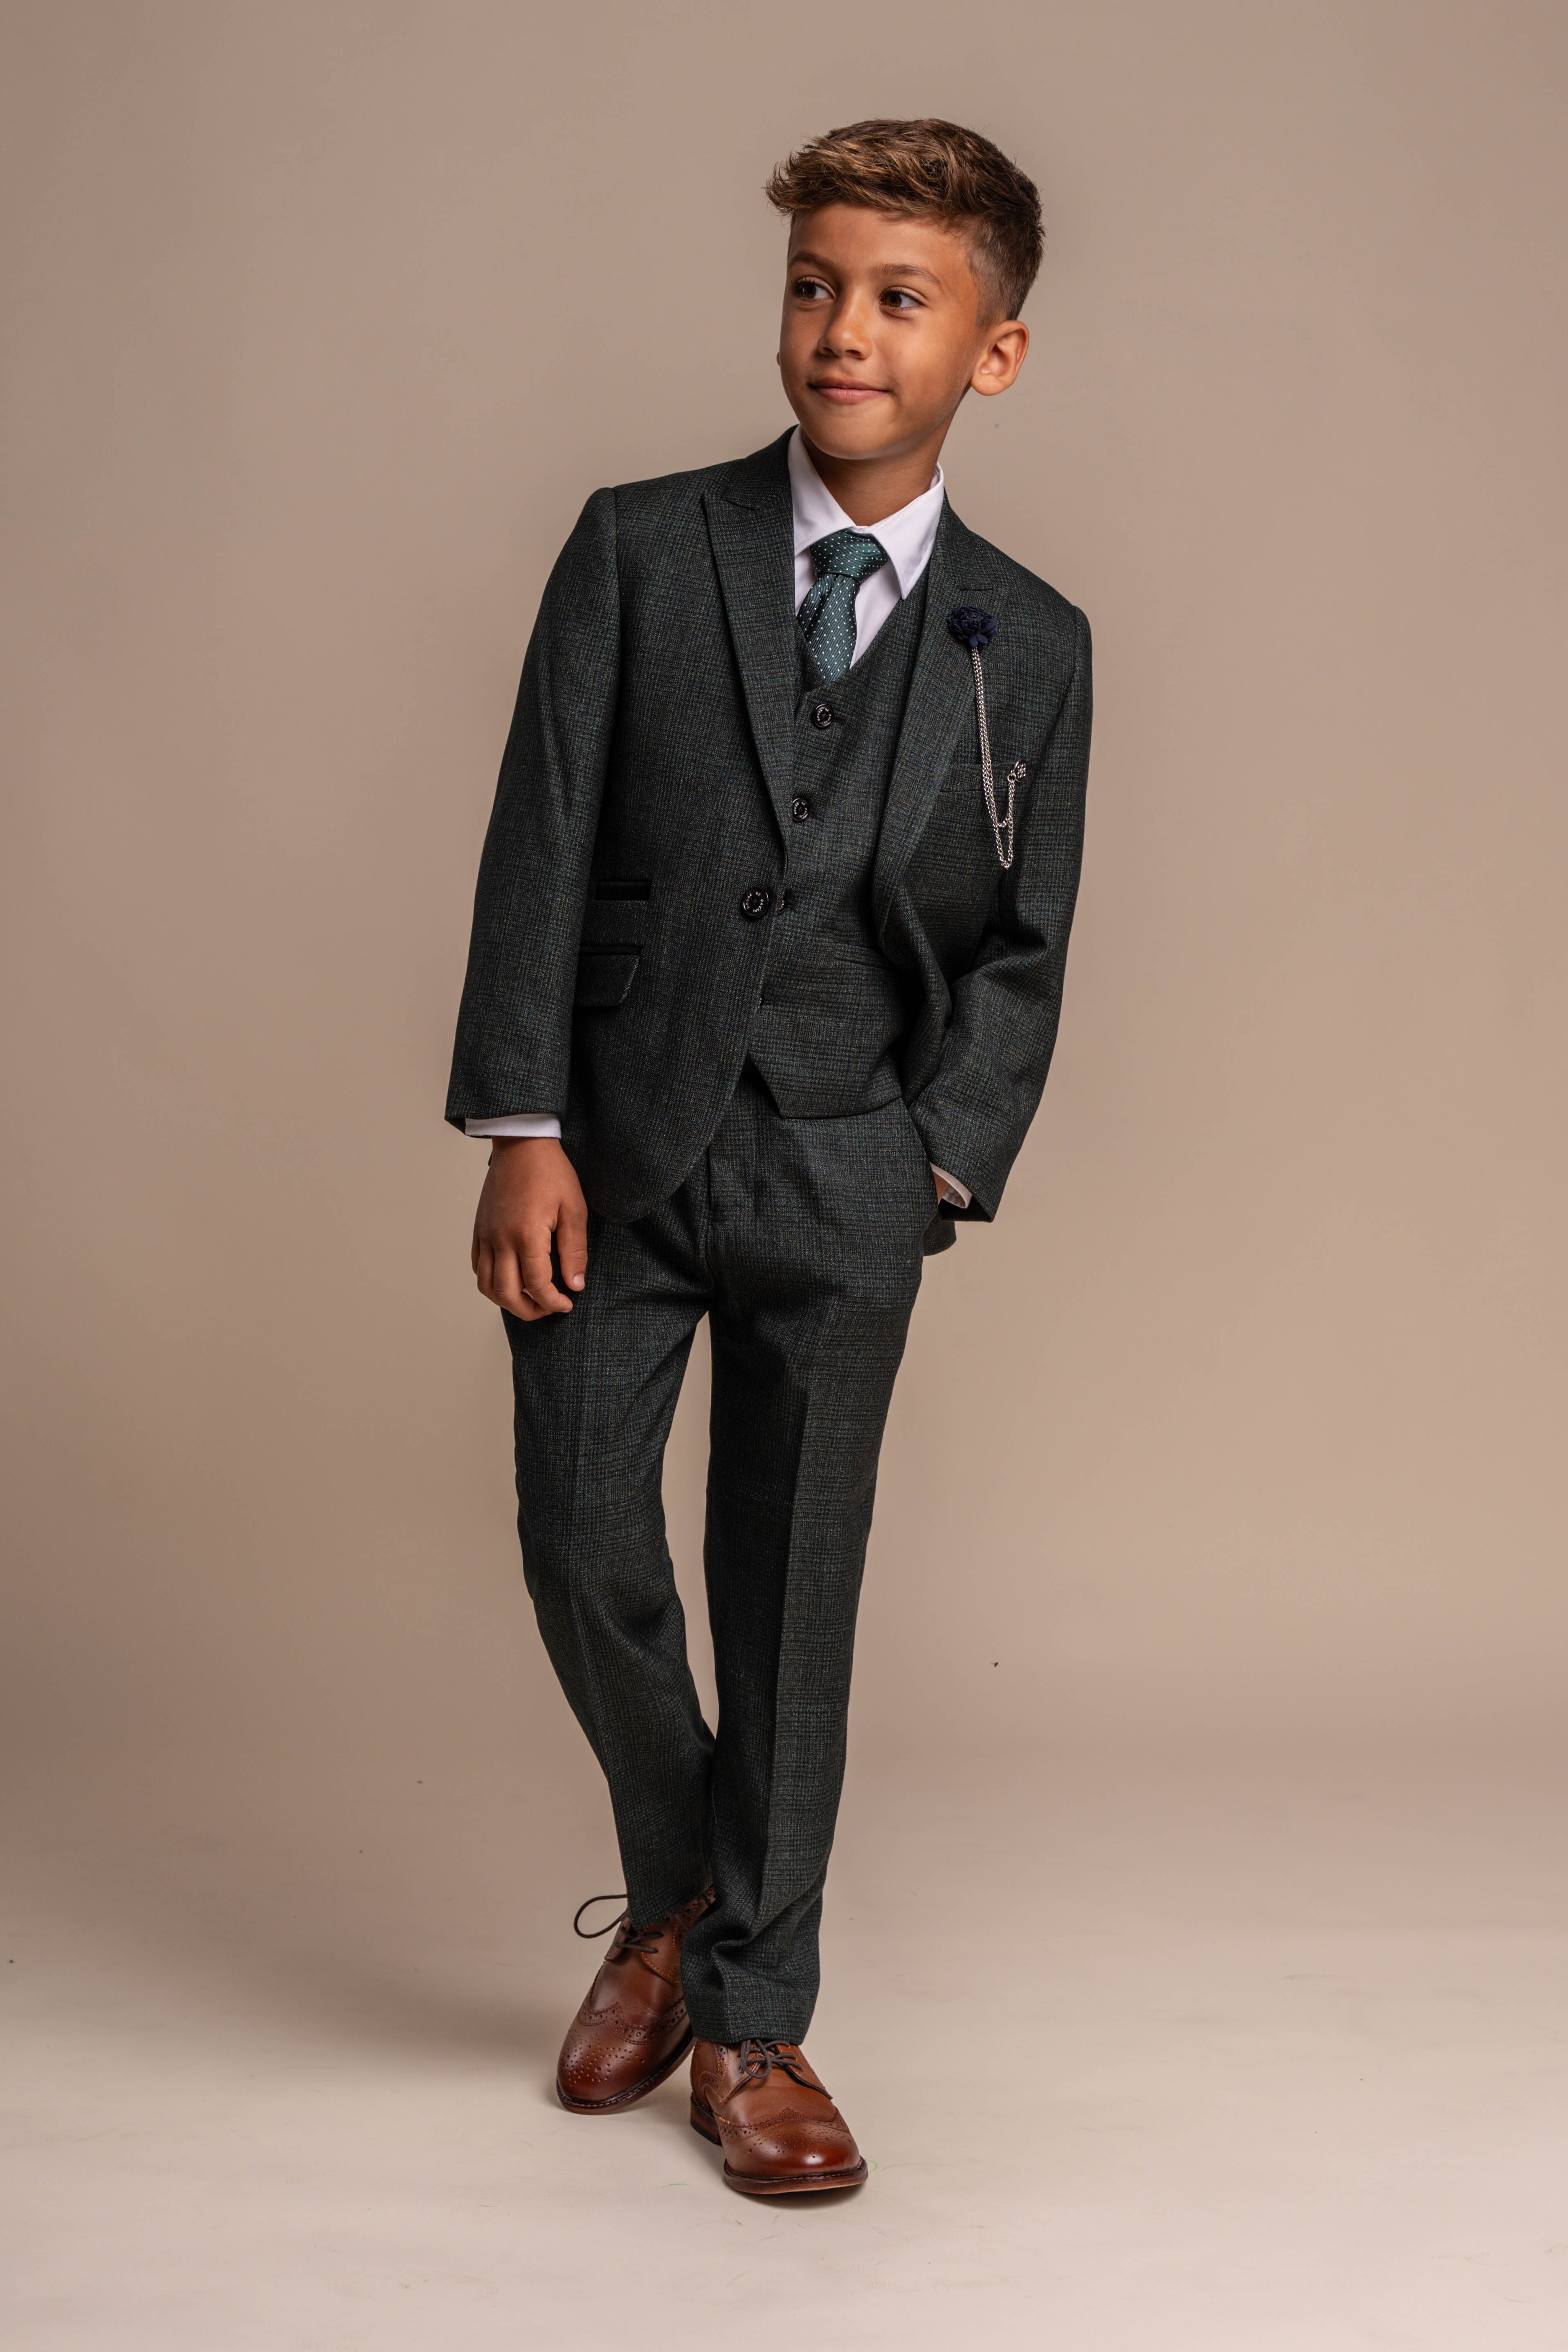 Jungen Anzug in Slim Fit für Formelle Anlässe - CARIDI